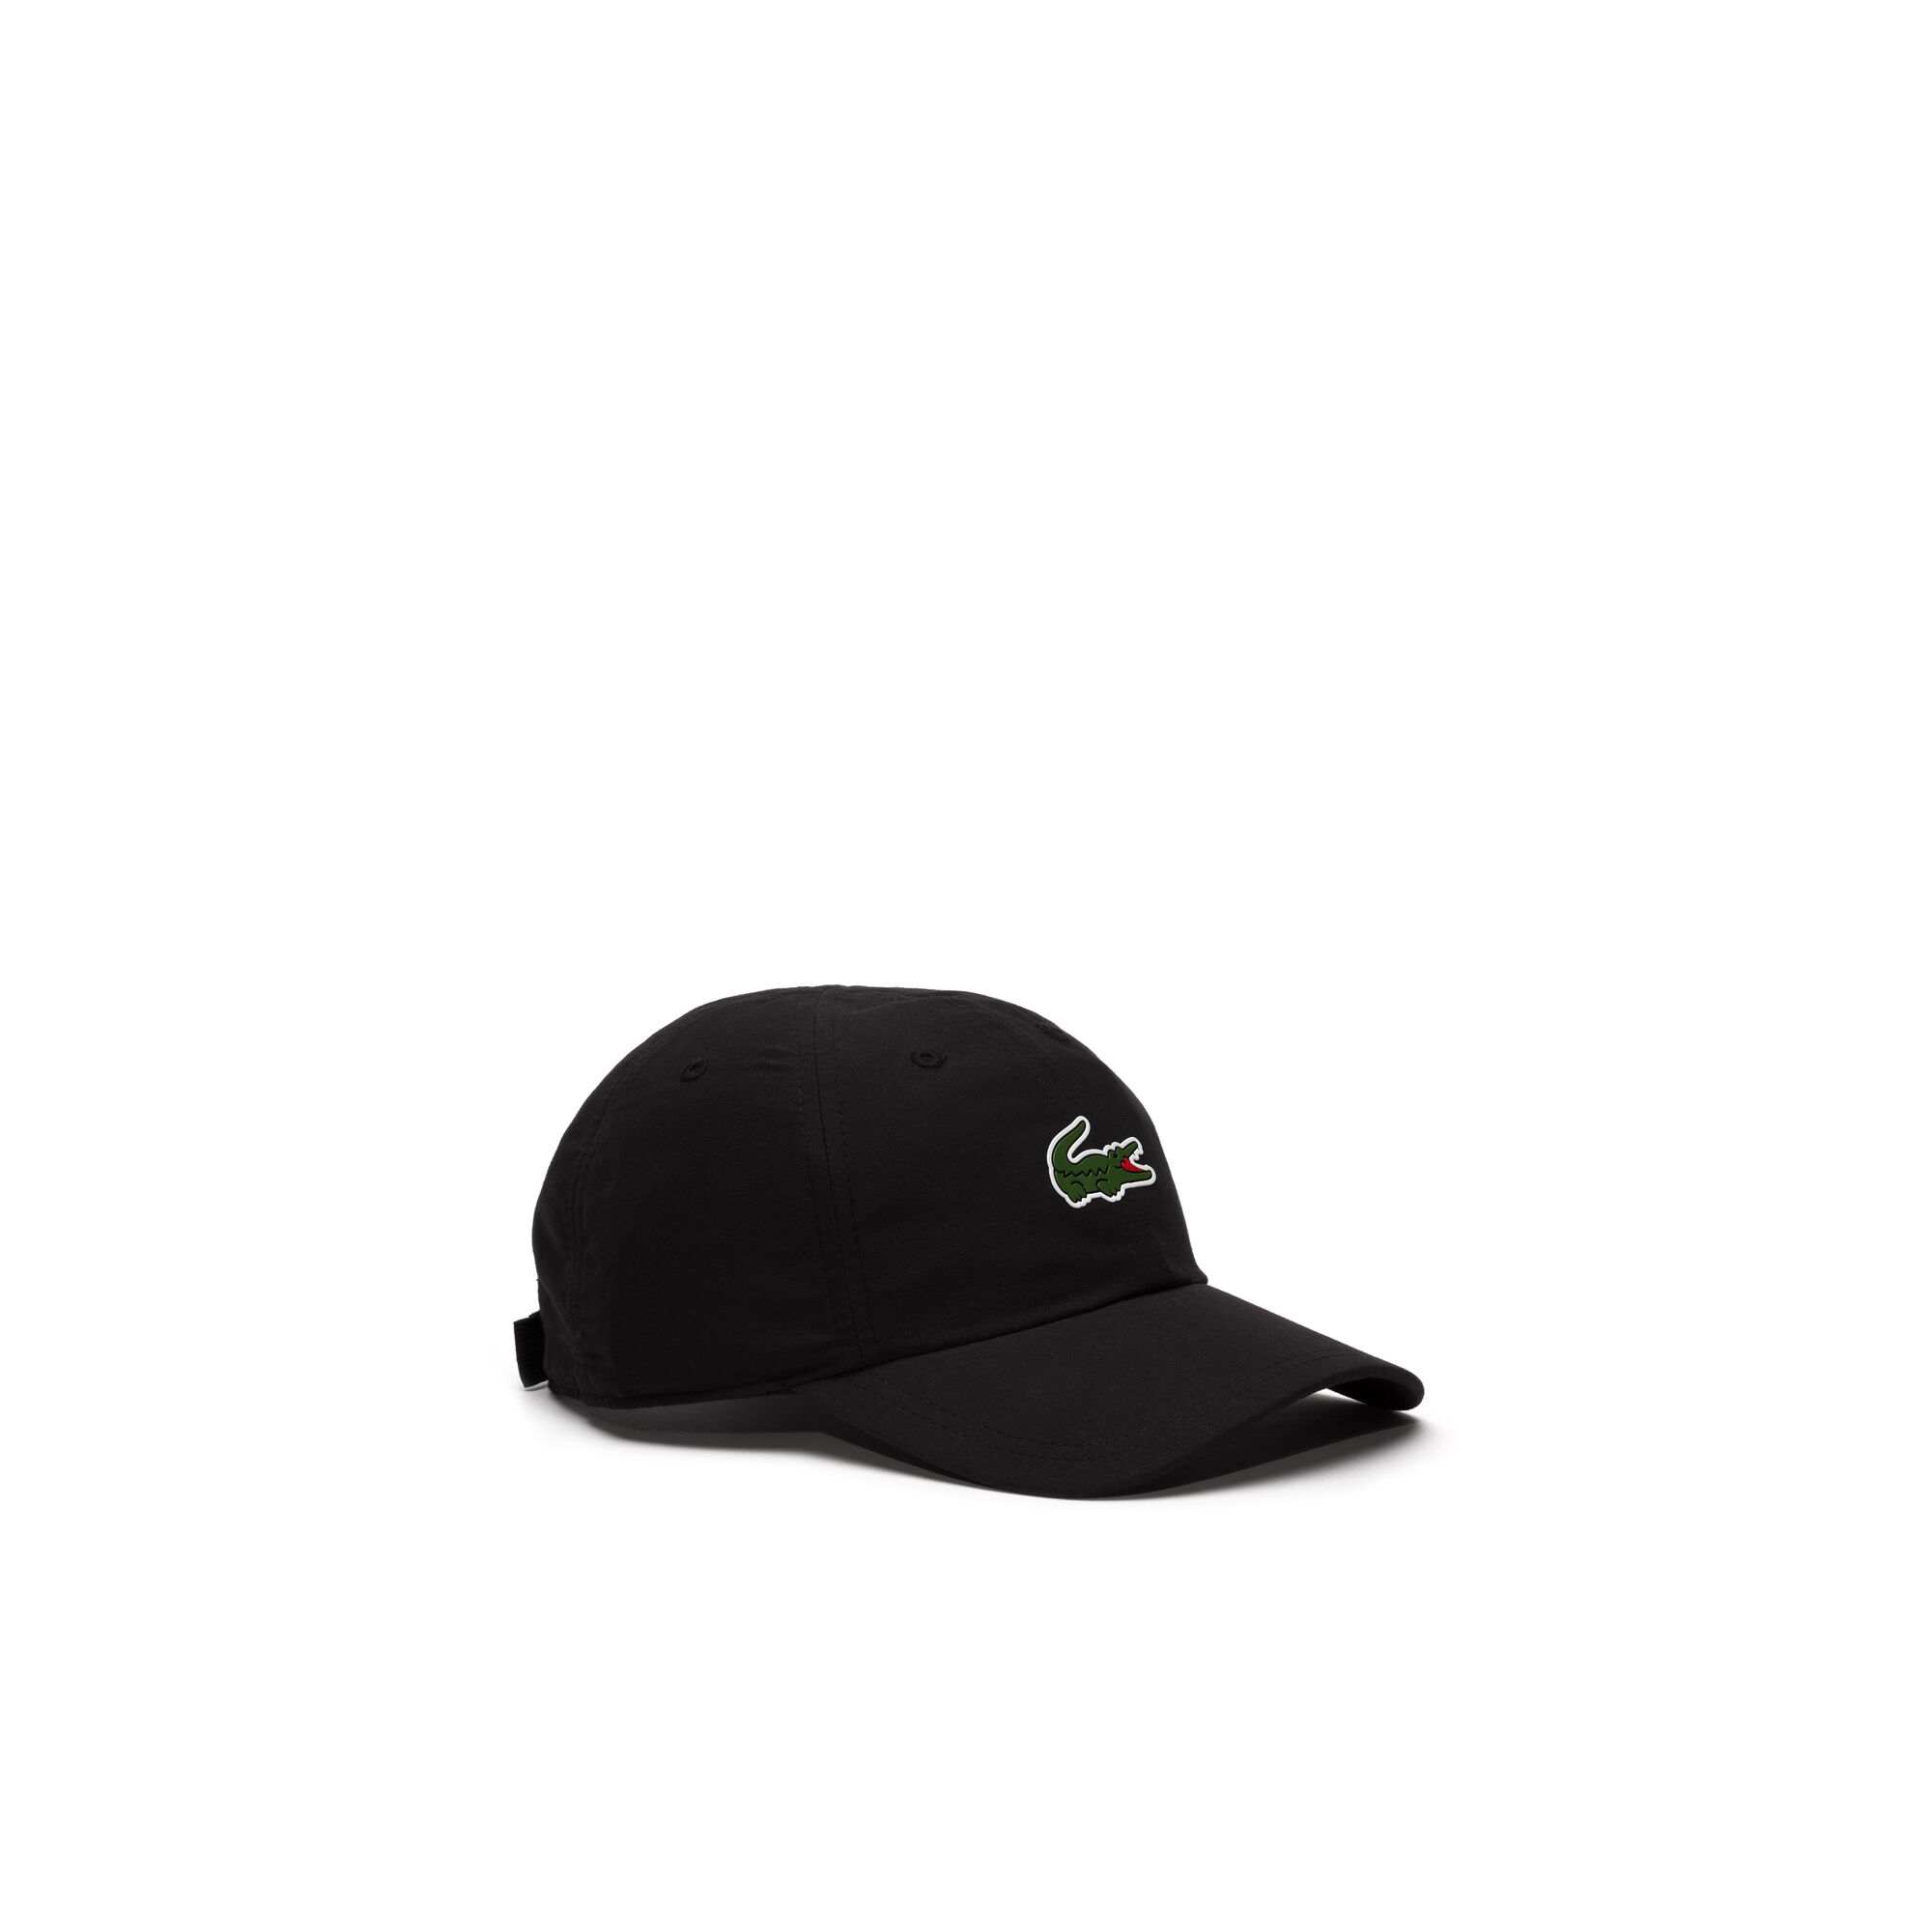 قبعة للرجال من نسيج ذو ألياف دقيقة لرياضة التنس من مجموعة Lacoste SPORT